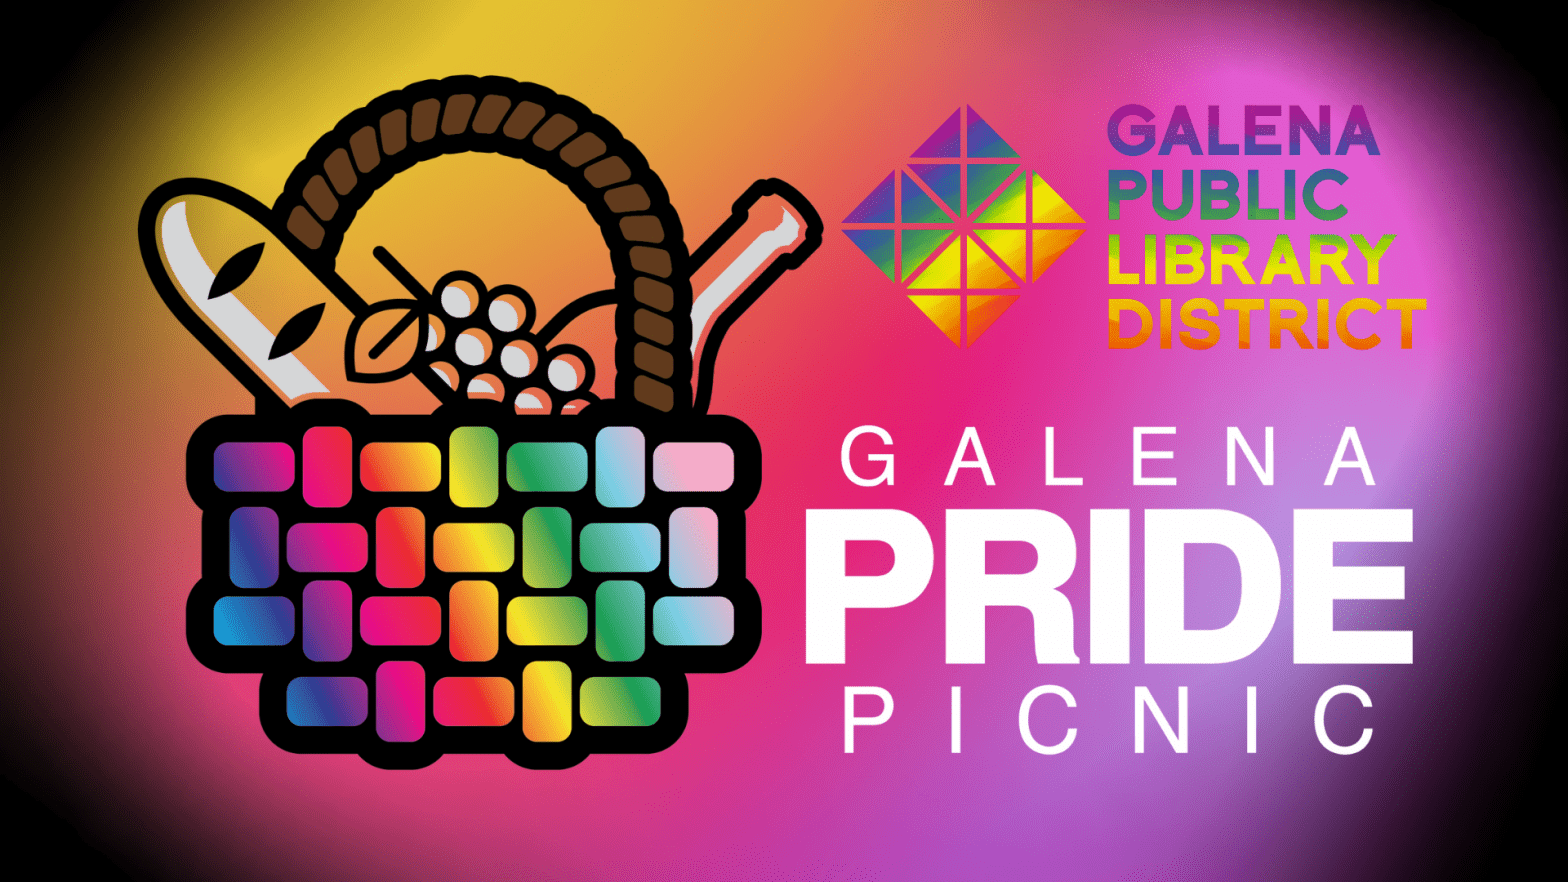 Galena Pride Picnic Galena Public Library District